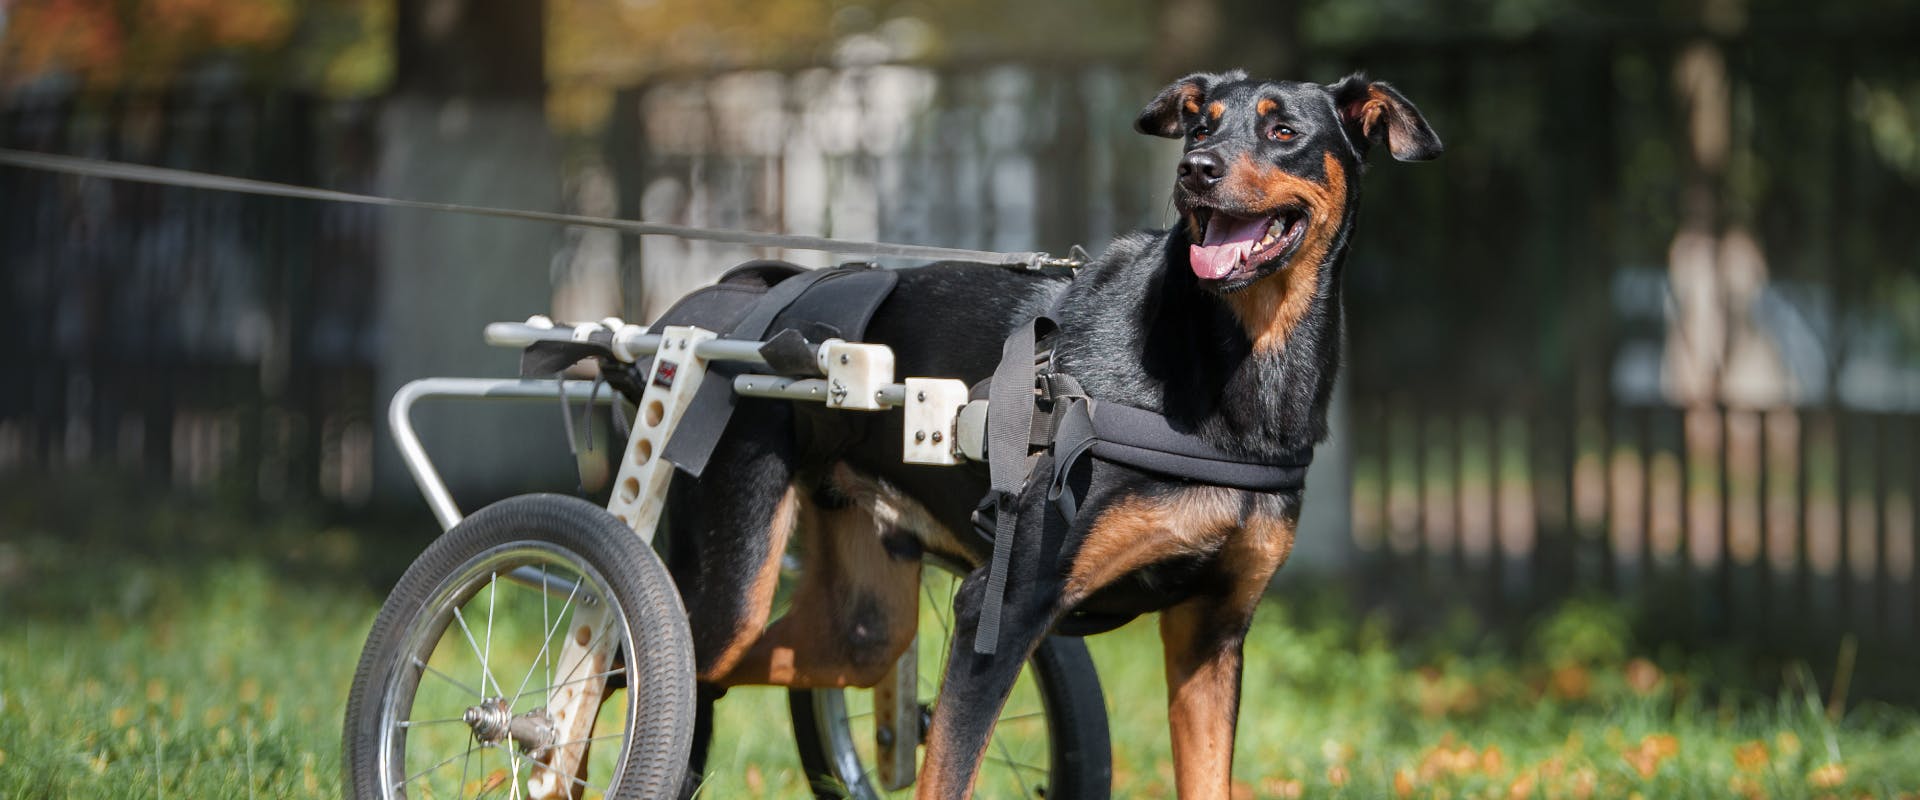 A dog using a wheelchair.